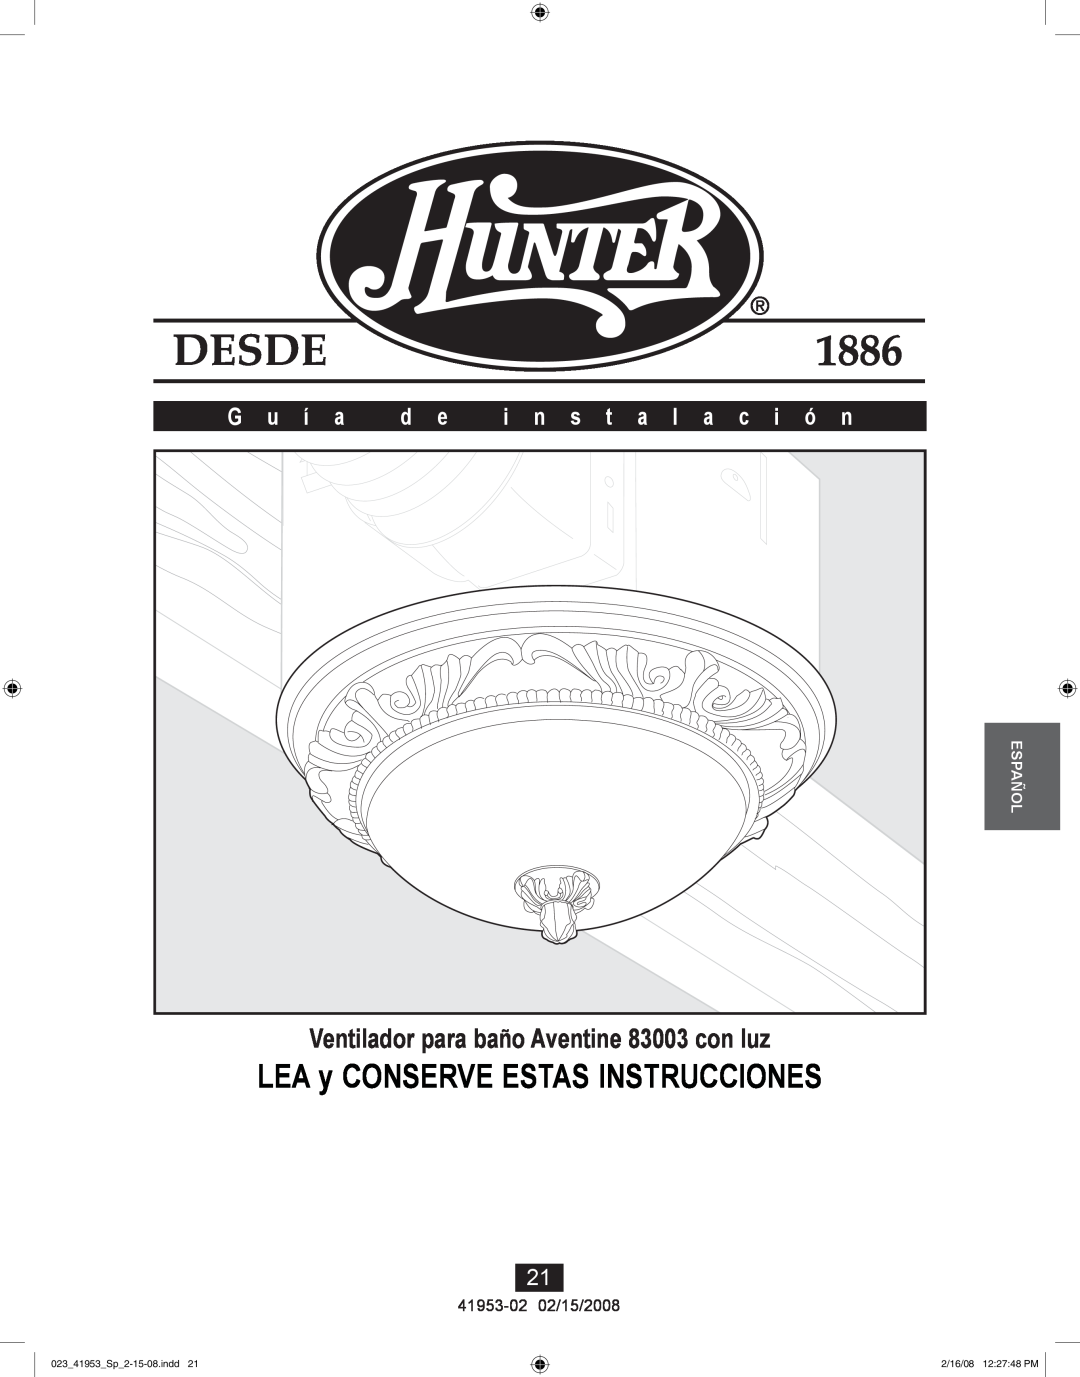 Hunter Fan 41953-01 LEA y CONSERVE ESTAS INSTRUCCIONES, Ventilador para baño Aventine 83003 con luz, G u í a, Español 